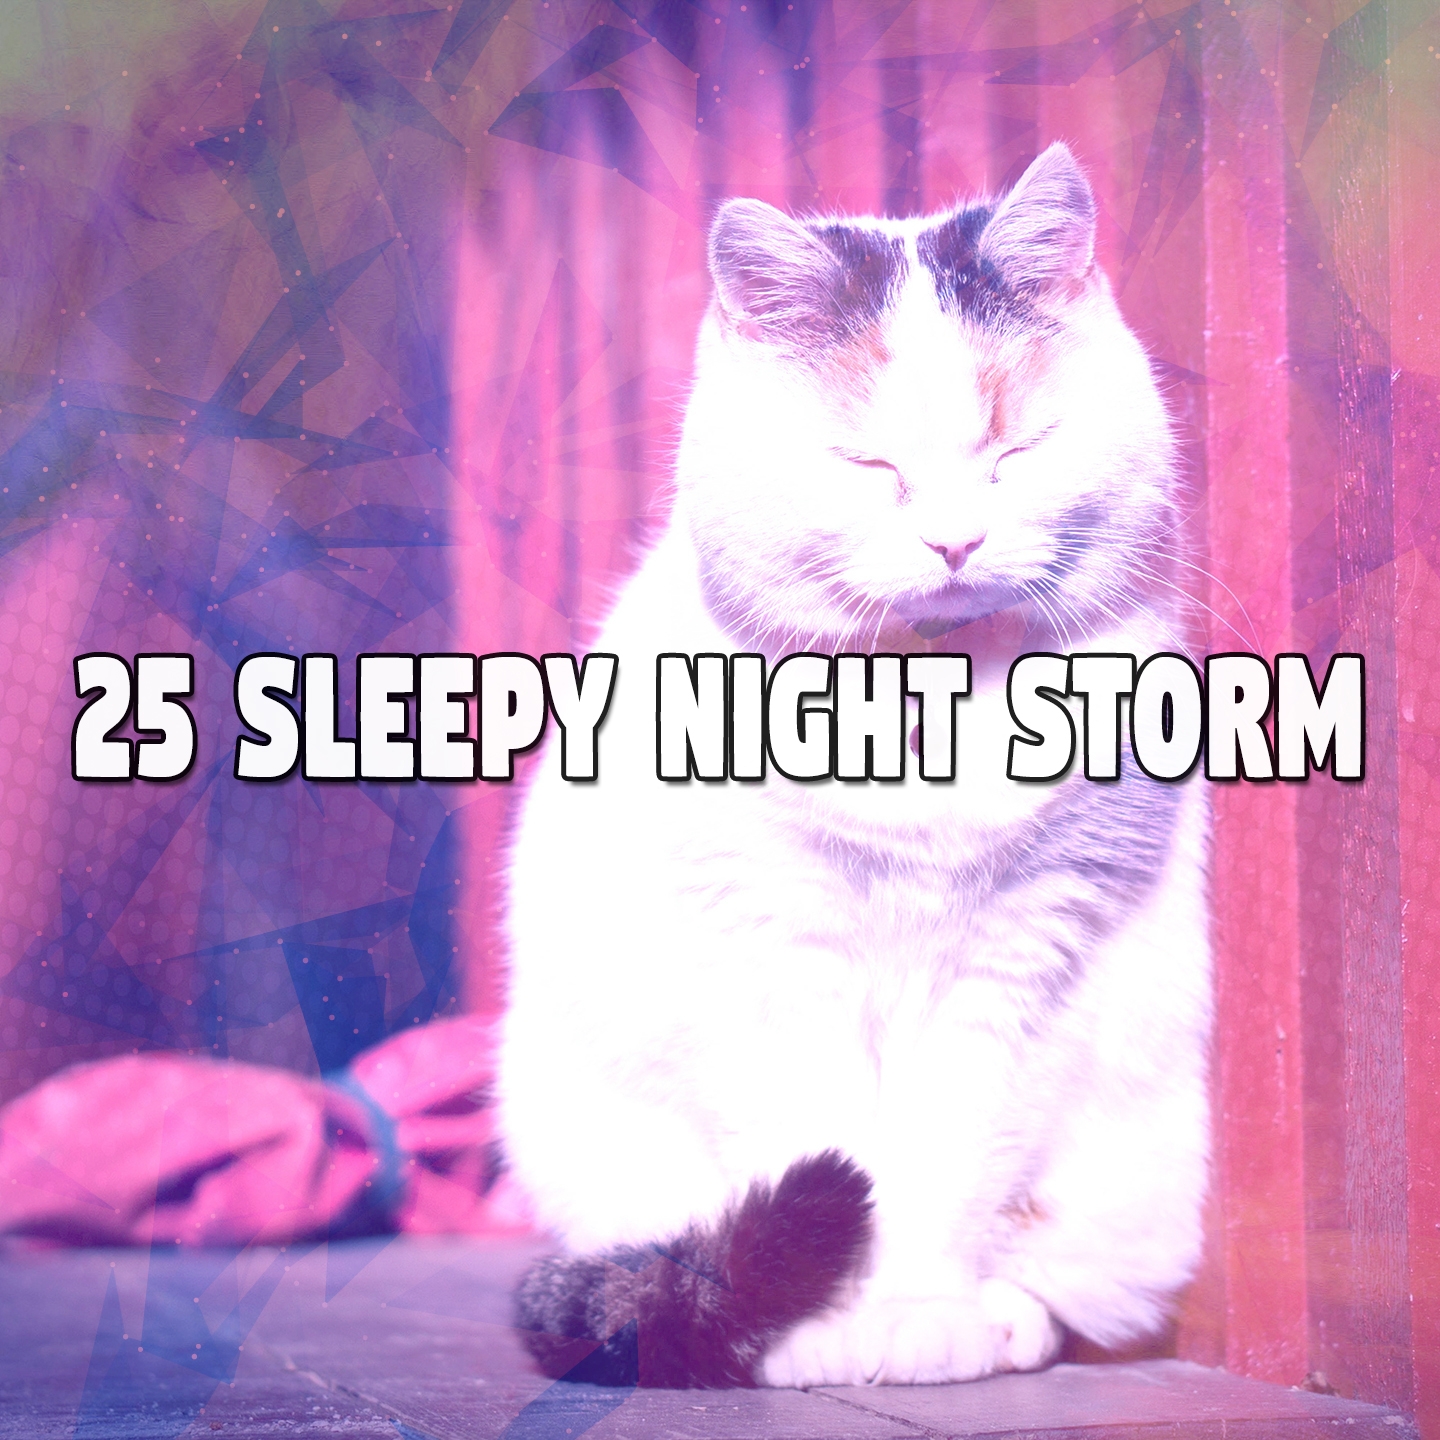 25 Sleepy Night Storm